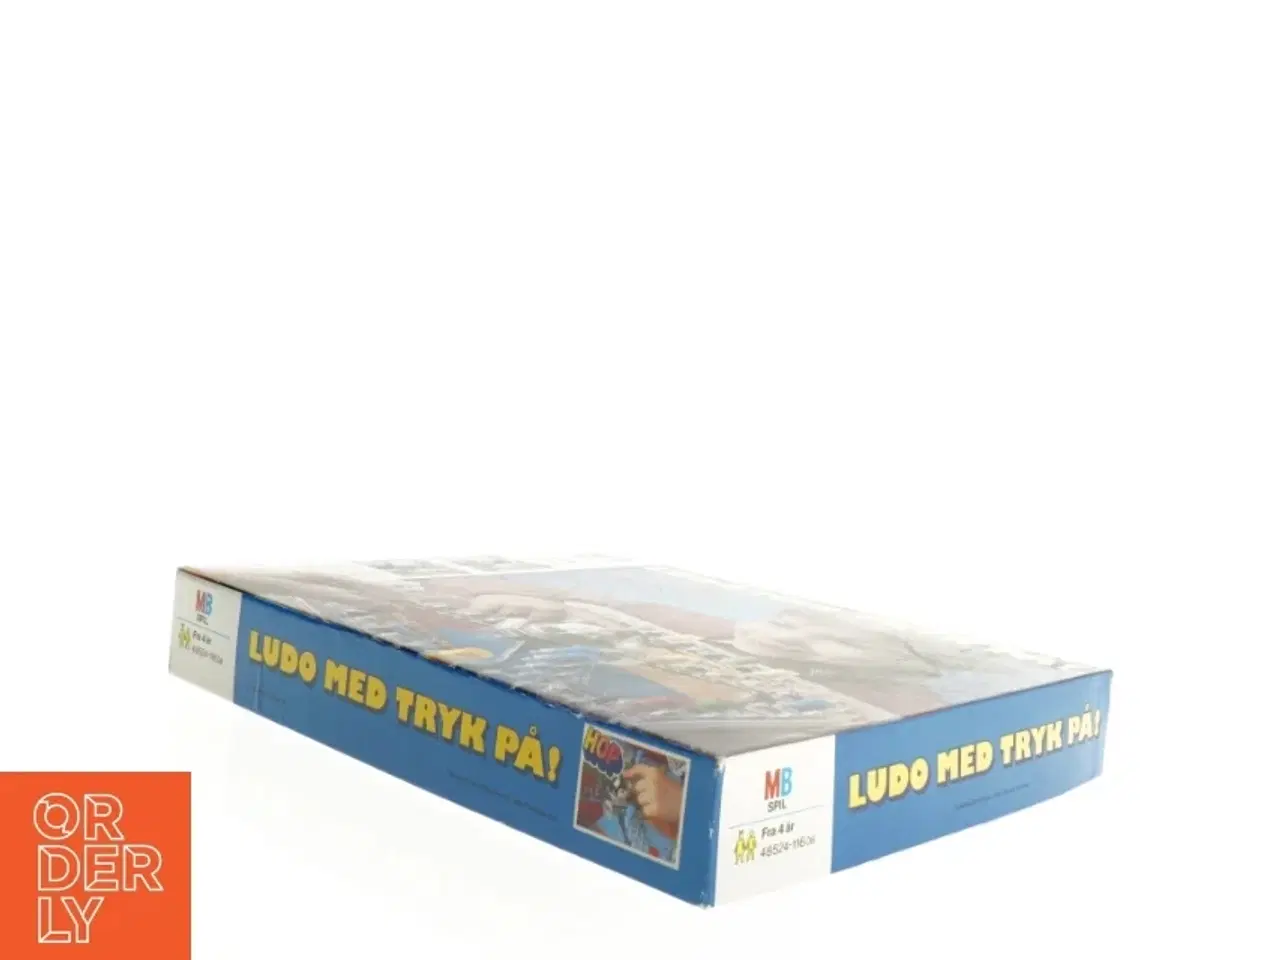 Billede 2 - Ludo med tryk på! brætspil fra MB Spil (str. 35 x 28 cm)